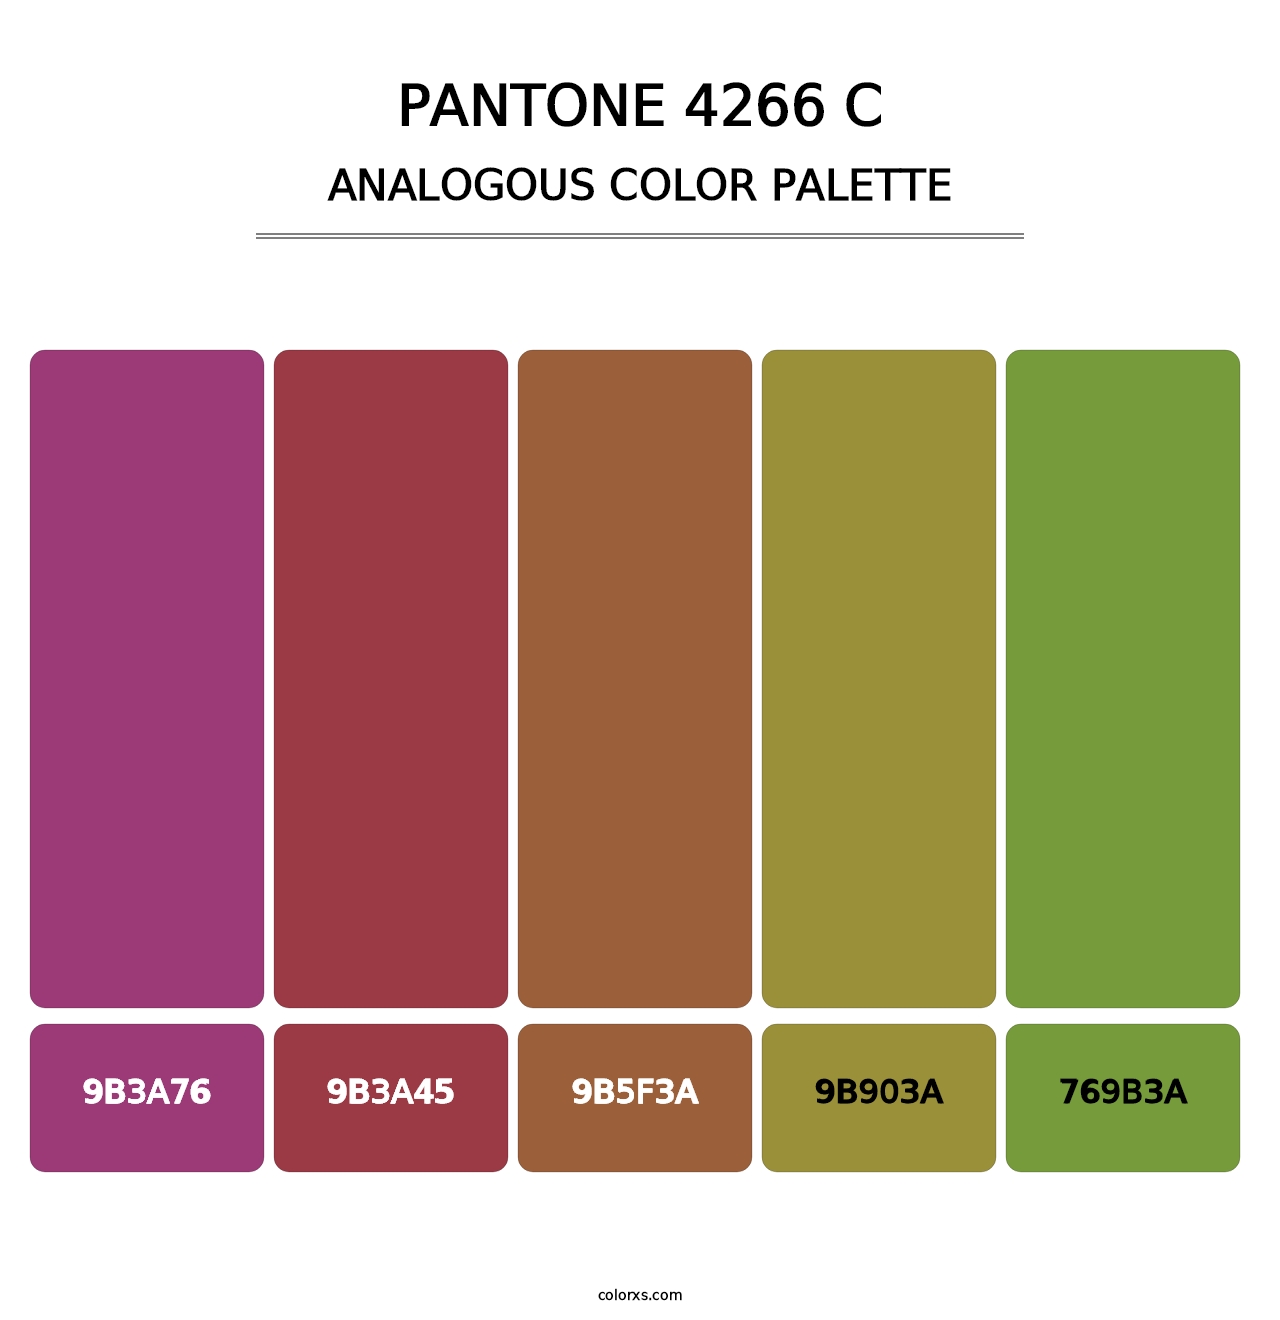 PANTONE 4266 C - Analogous Color Palette